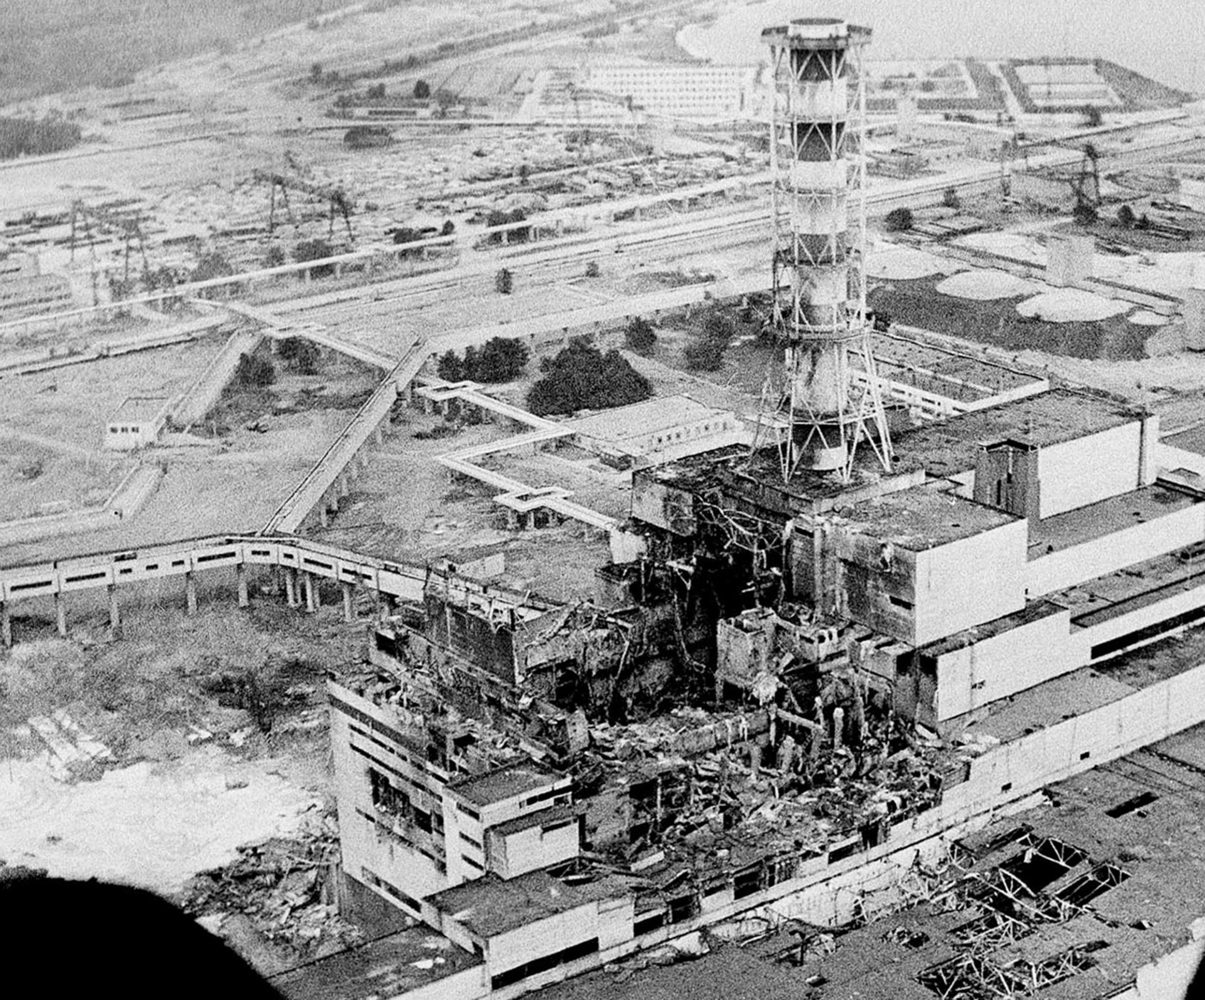 36 лет трагедии на Чернобыльской АЭС: редкие снимки последствий аварии